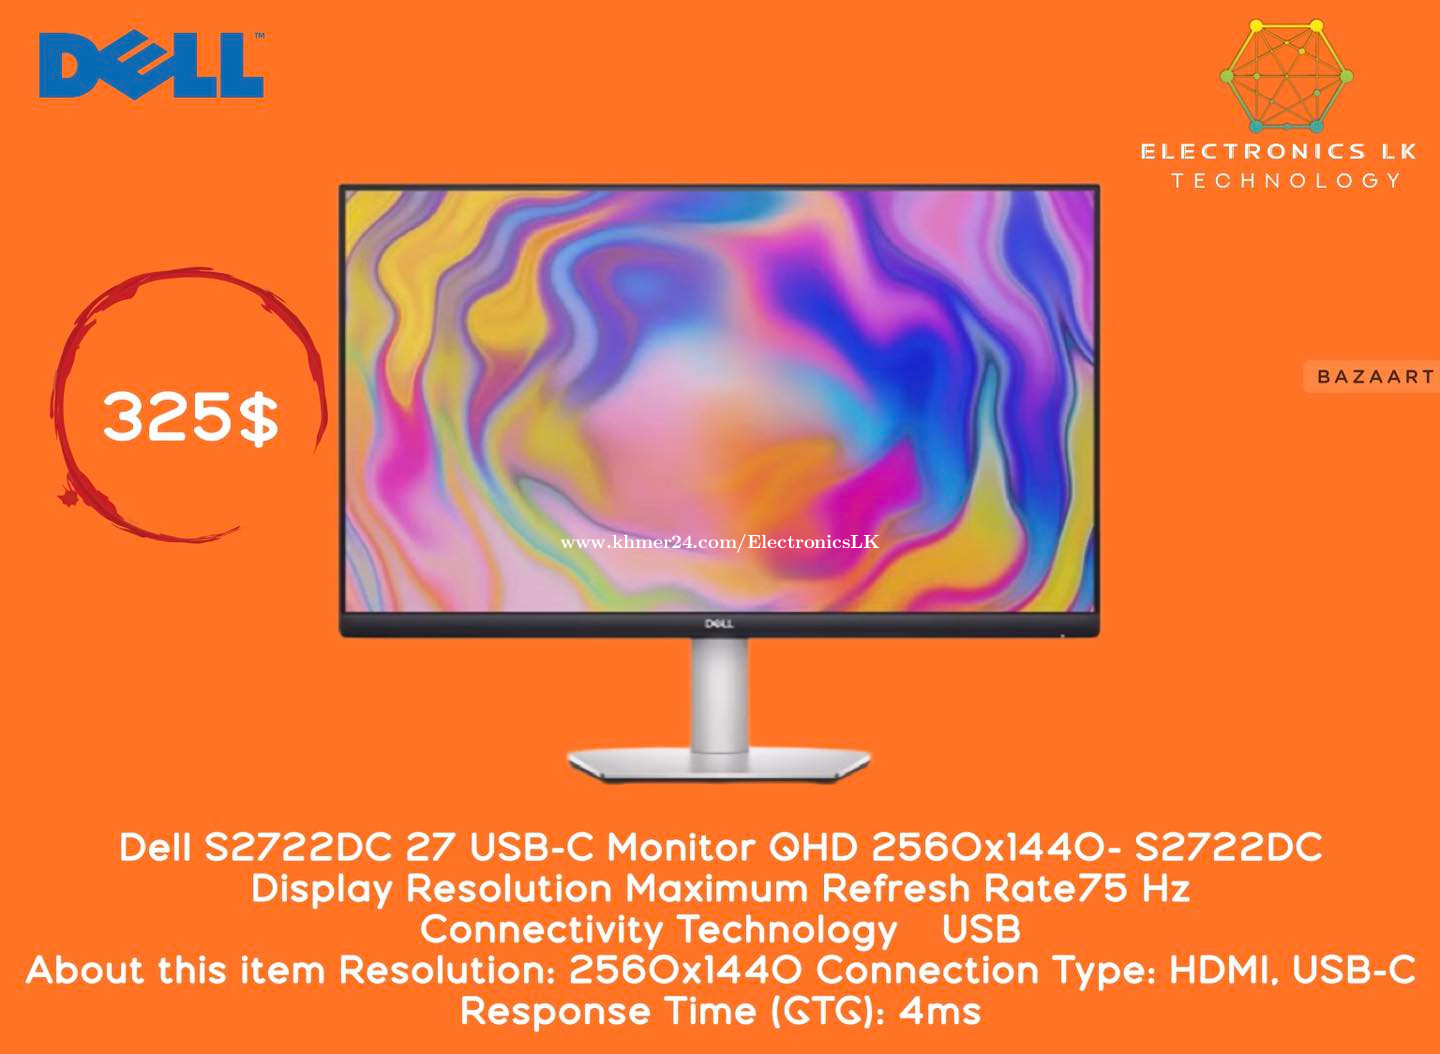 Dell S2722DC 27 USB-C Monitor QHD 2560x1440- S2722DC Price $325.00